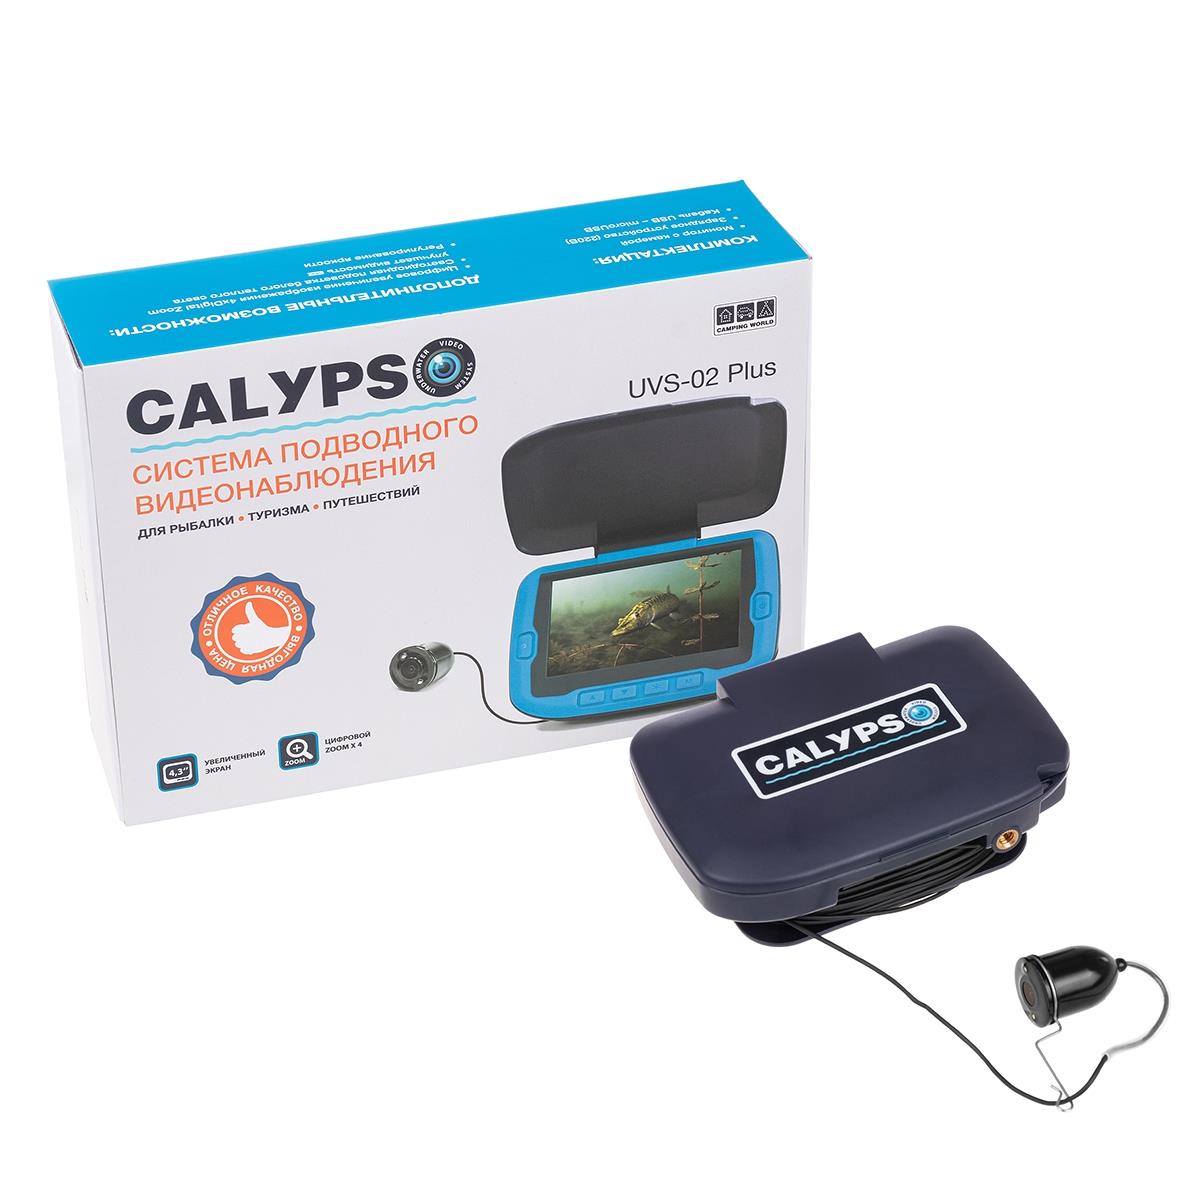 Подводная видеокамера CALYPSO UVS-02 PLUS (FDV-1112) холодильник авто термоэлектрич cw unicool 381421 new camping world